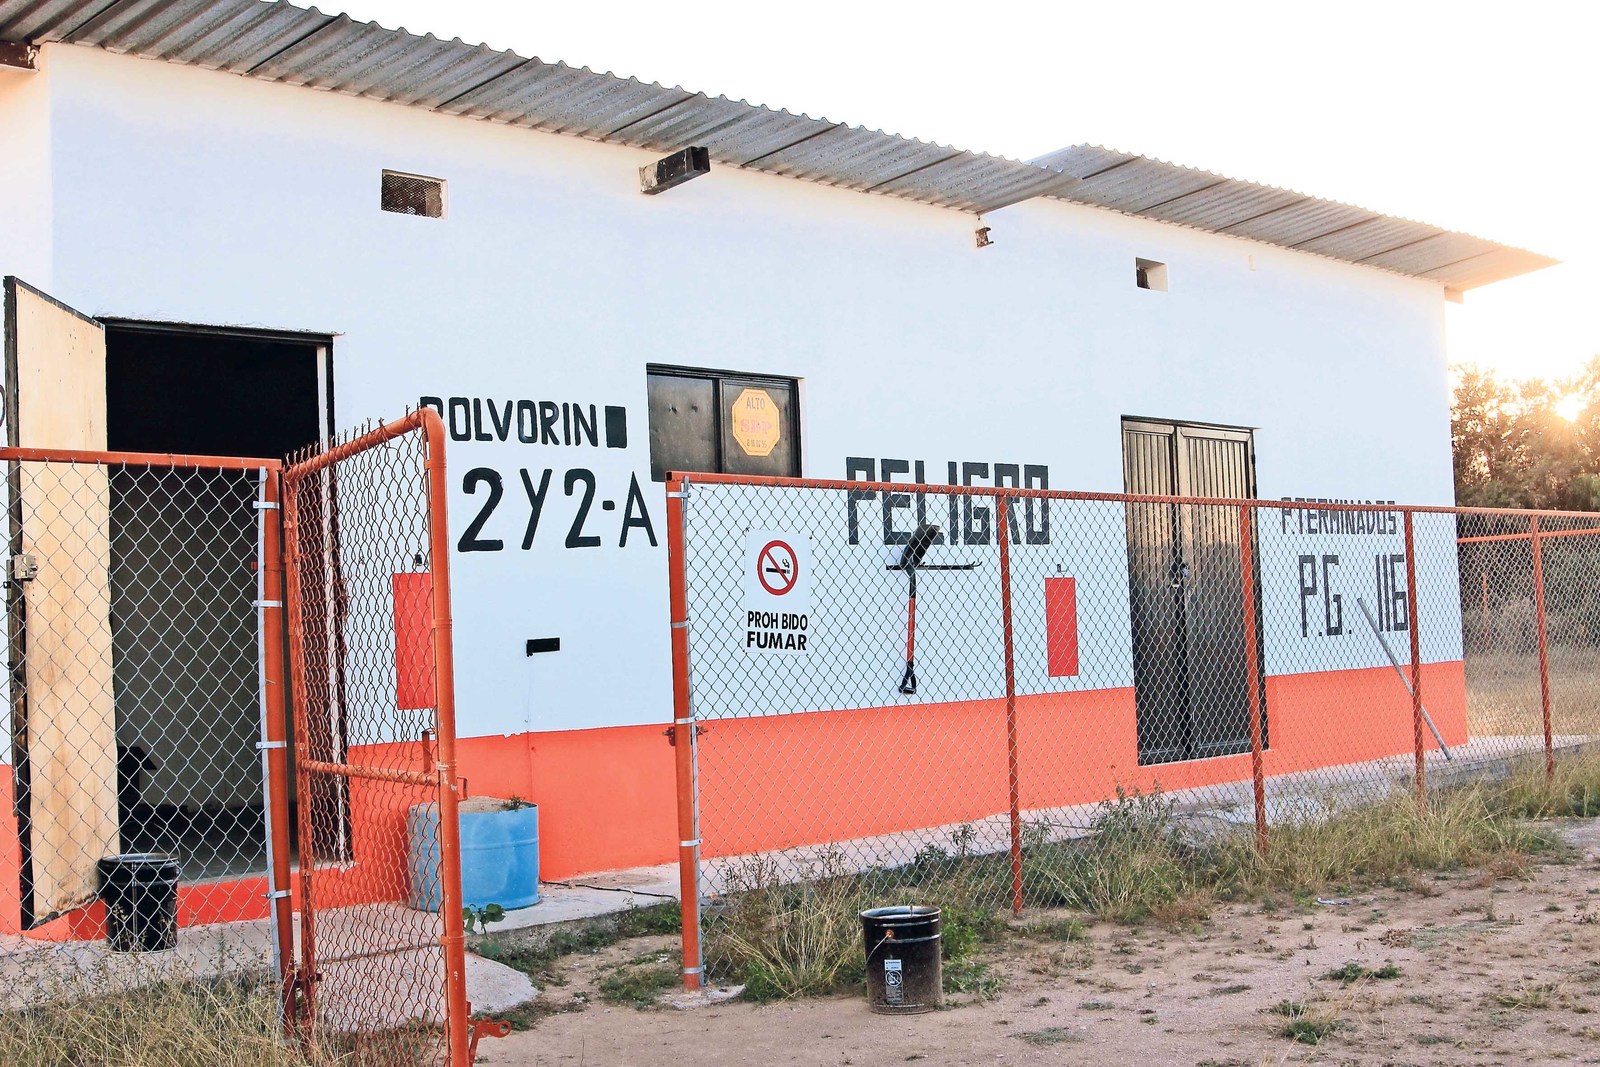 Registrados. En San Luis Potosí existen tres fabricantes de pirotecnia autorizados por la Sedena, pero a nivel estatal son 20, afirma el cohetero Juan Bautista Medina. (EL UNIVERSAL)